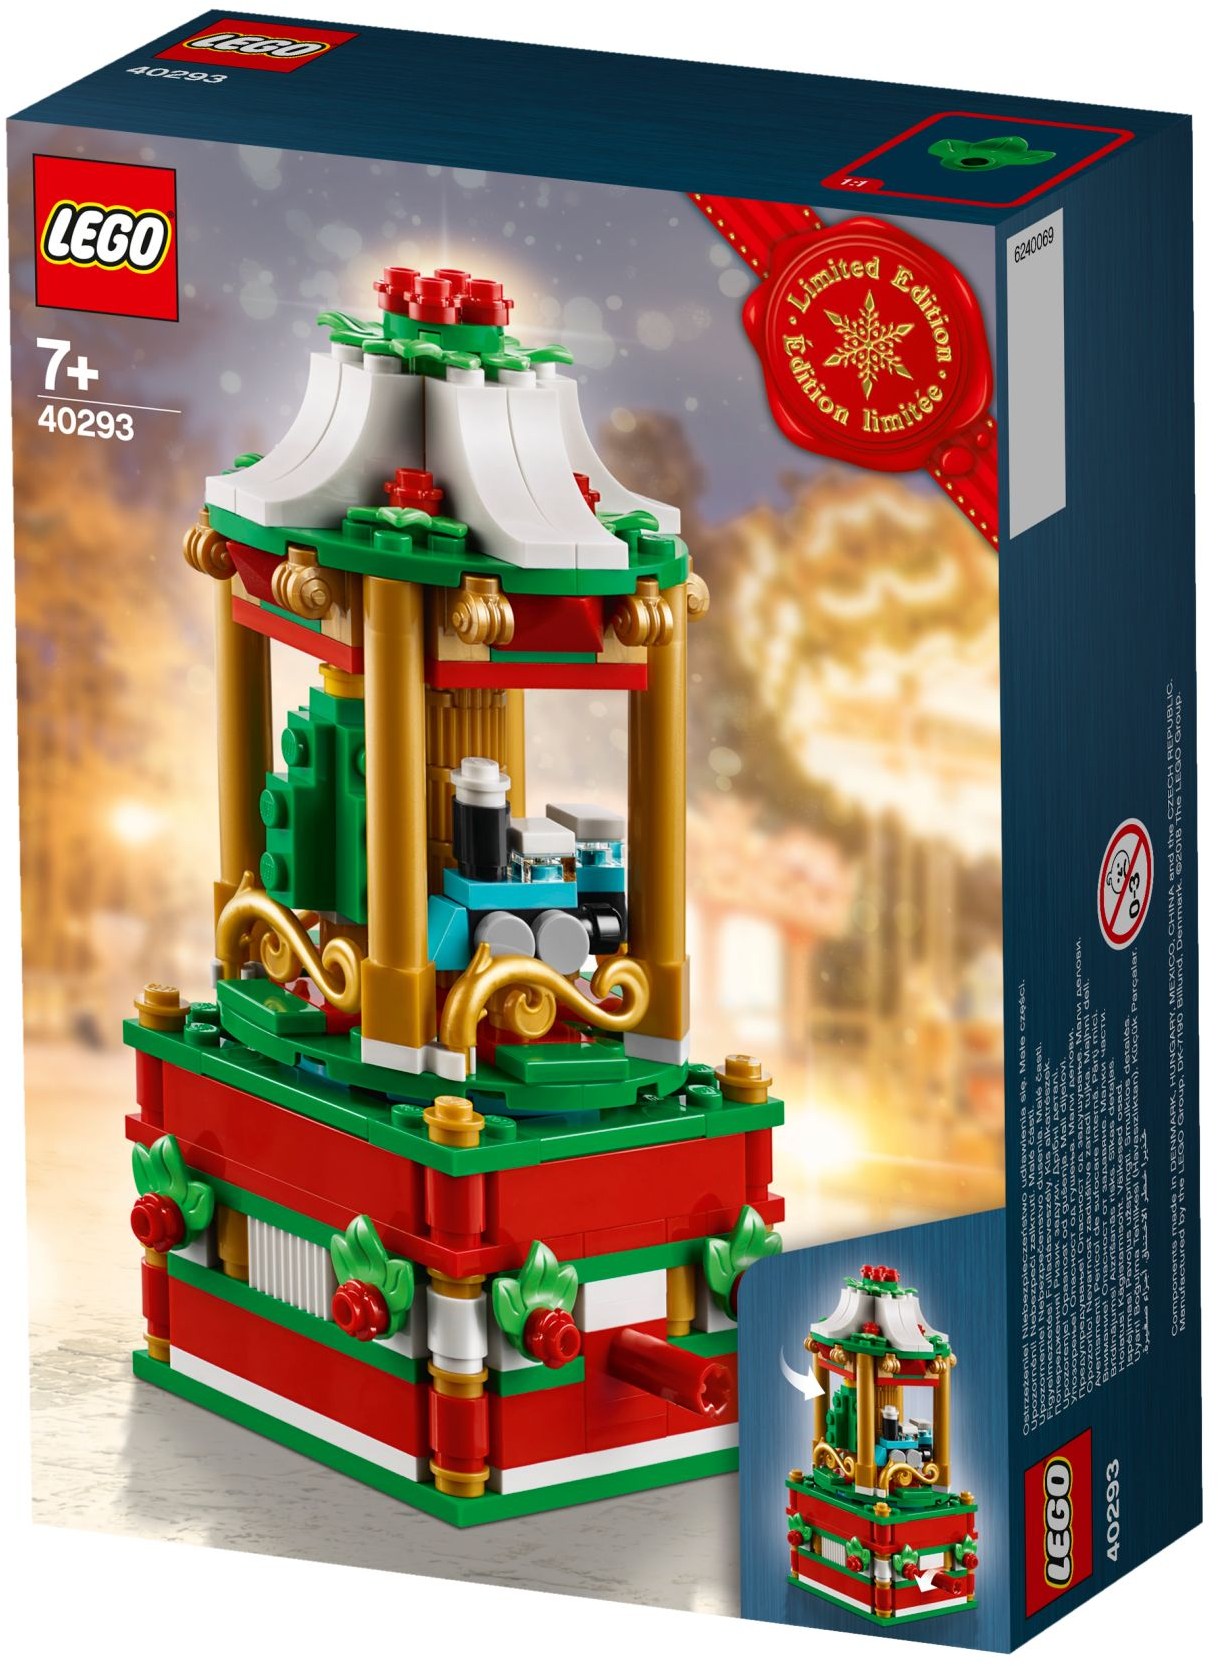 LEGO Christmas Carousel 40293 (New & Sealed)